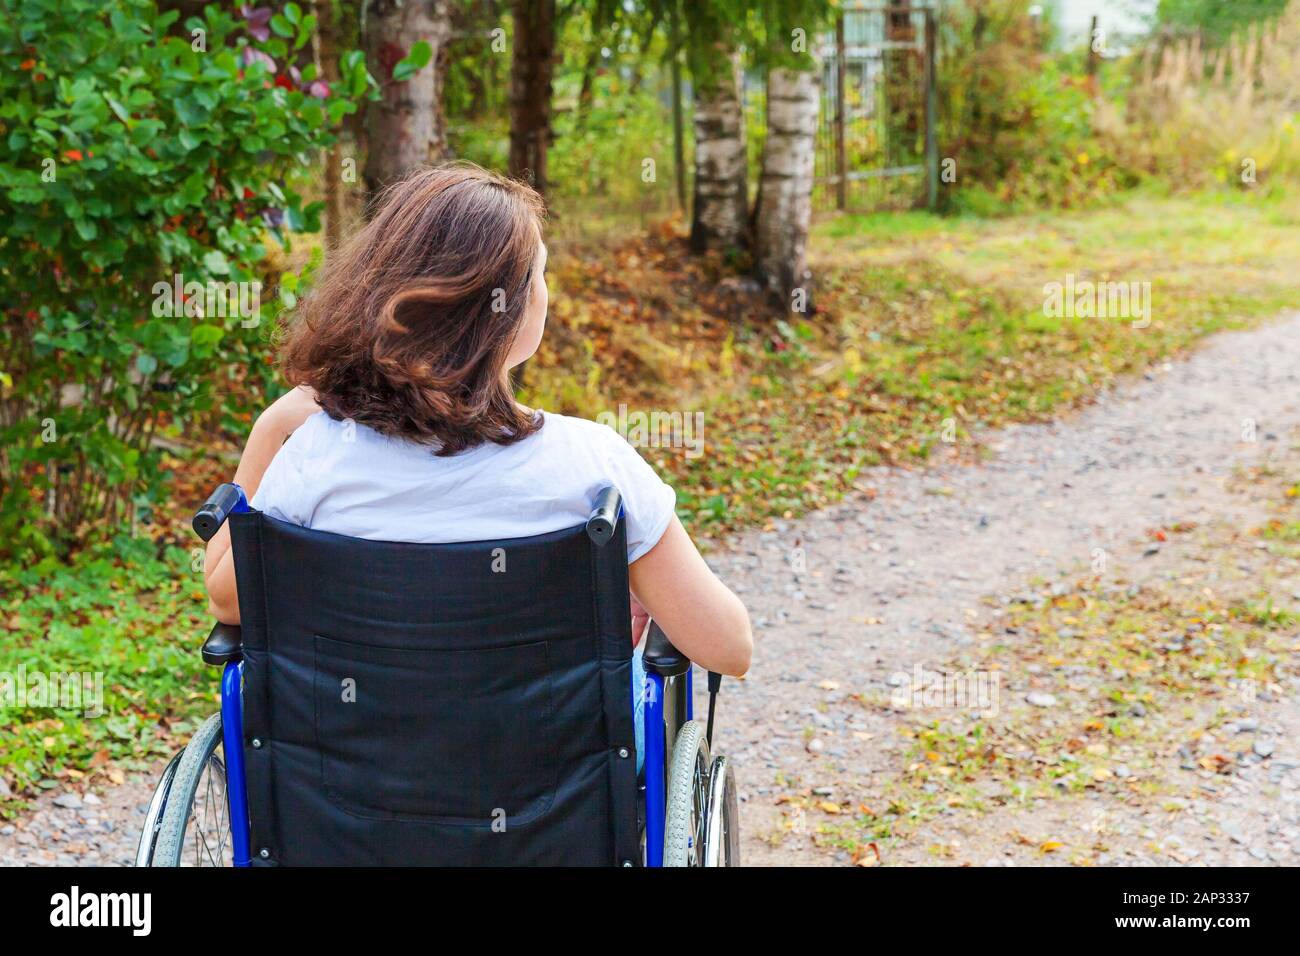 Mujer joven feliz handicap en silla de ruedas en la carretera en el hospital Park disfruta de libertad. Niña paralizada en silla no válida para personas discapacitadas en la naturaleza al aire libre. Concepto de rehabilitación Foto de stock